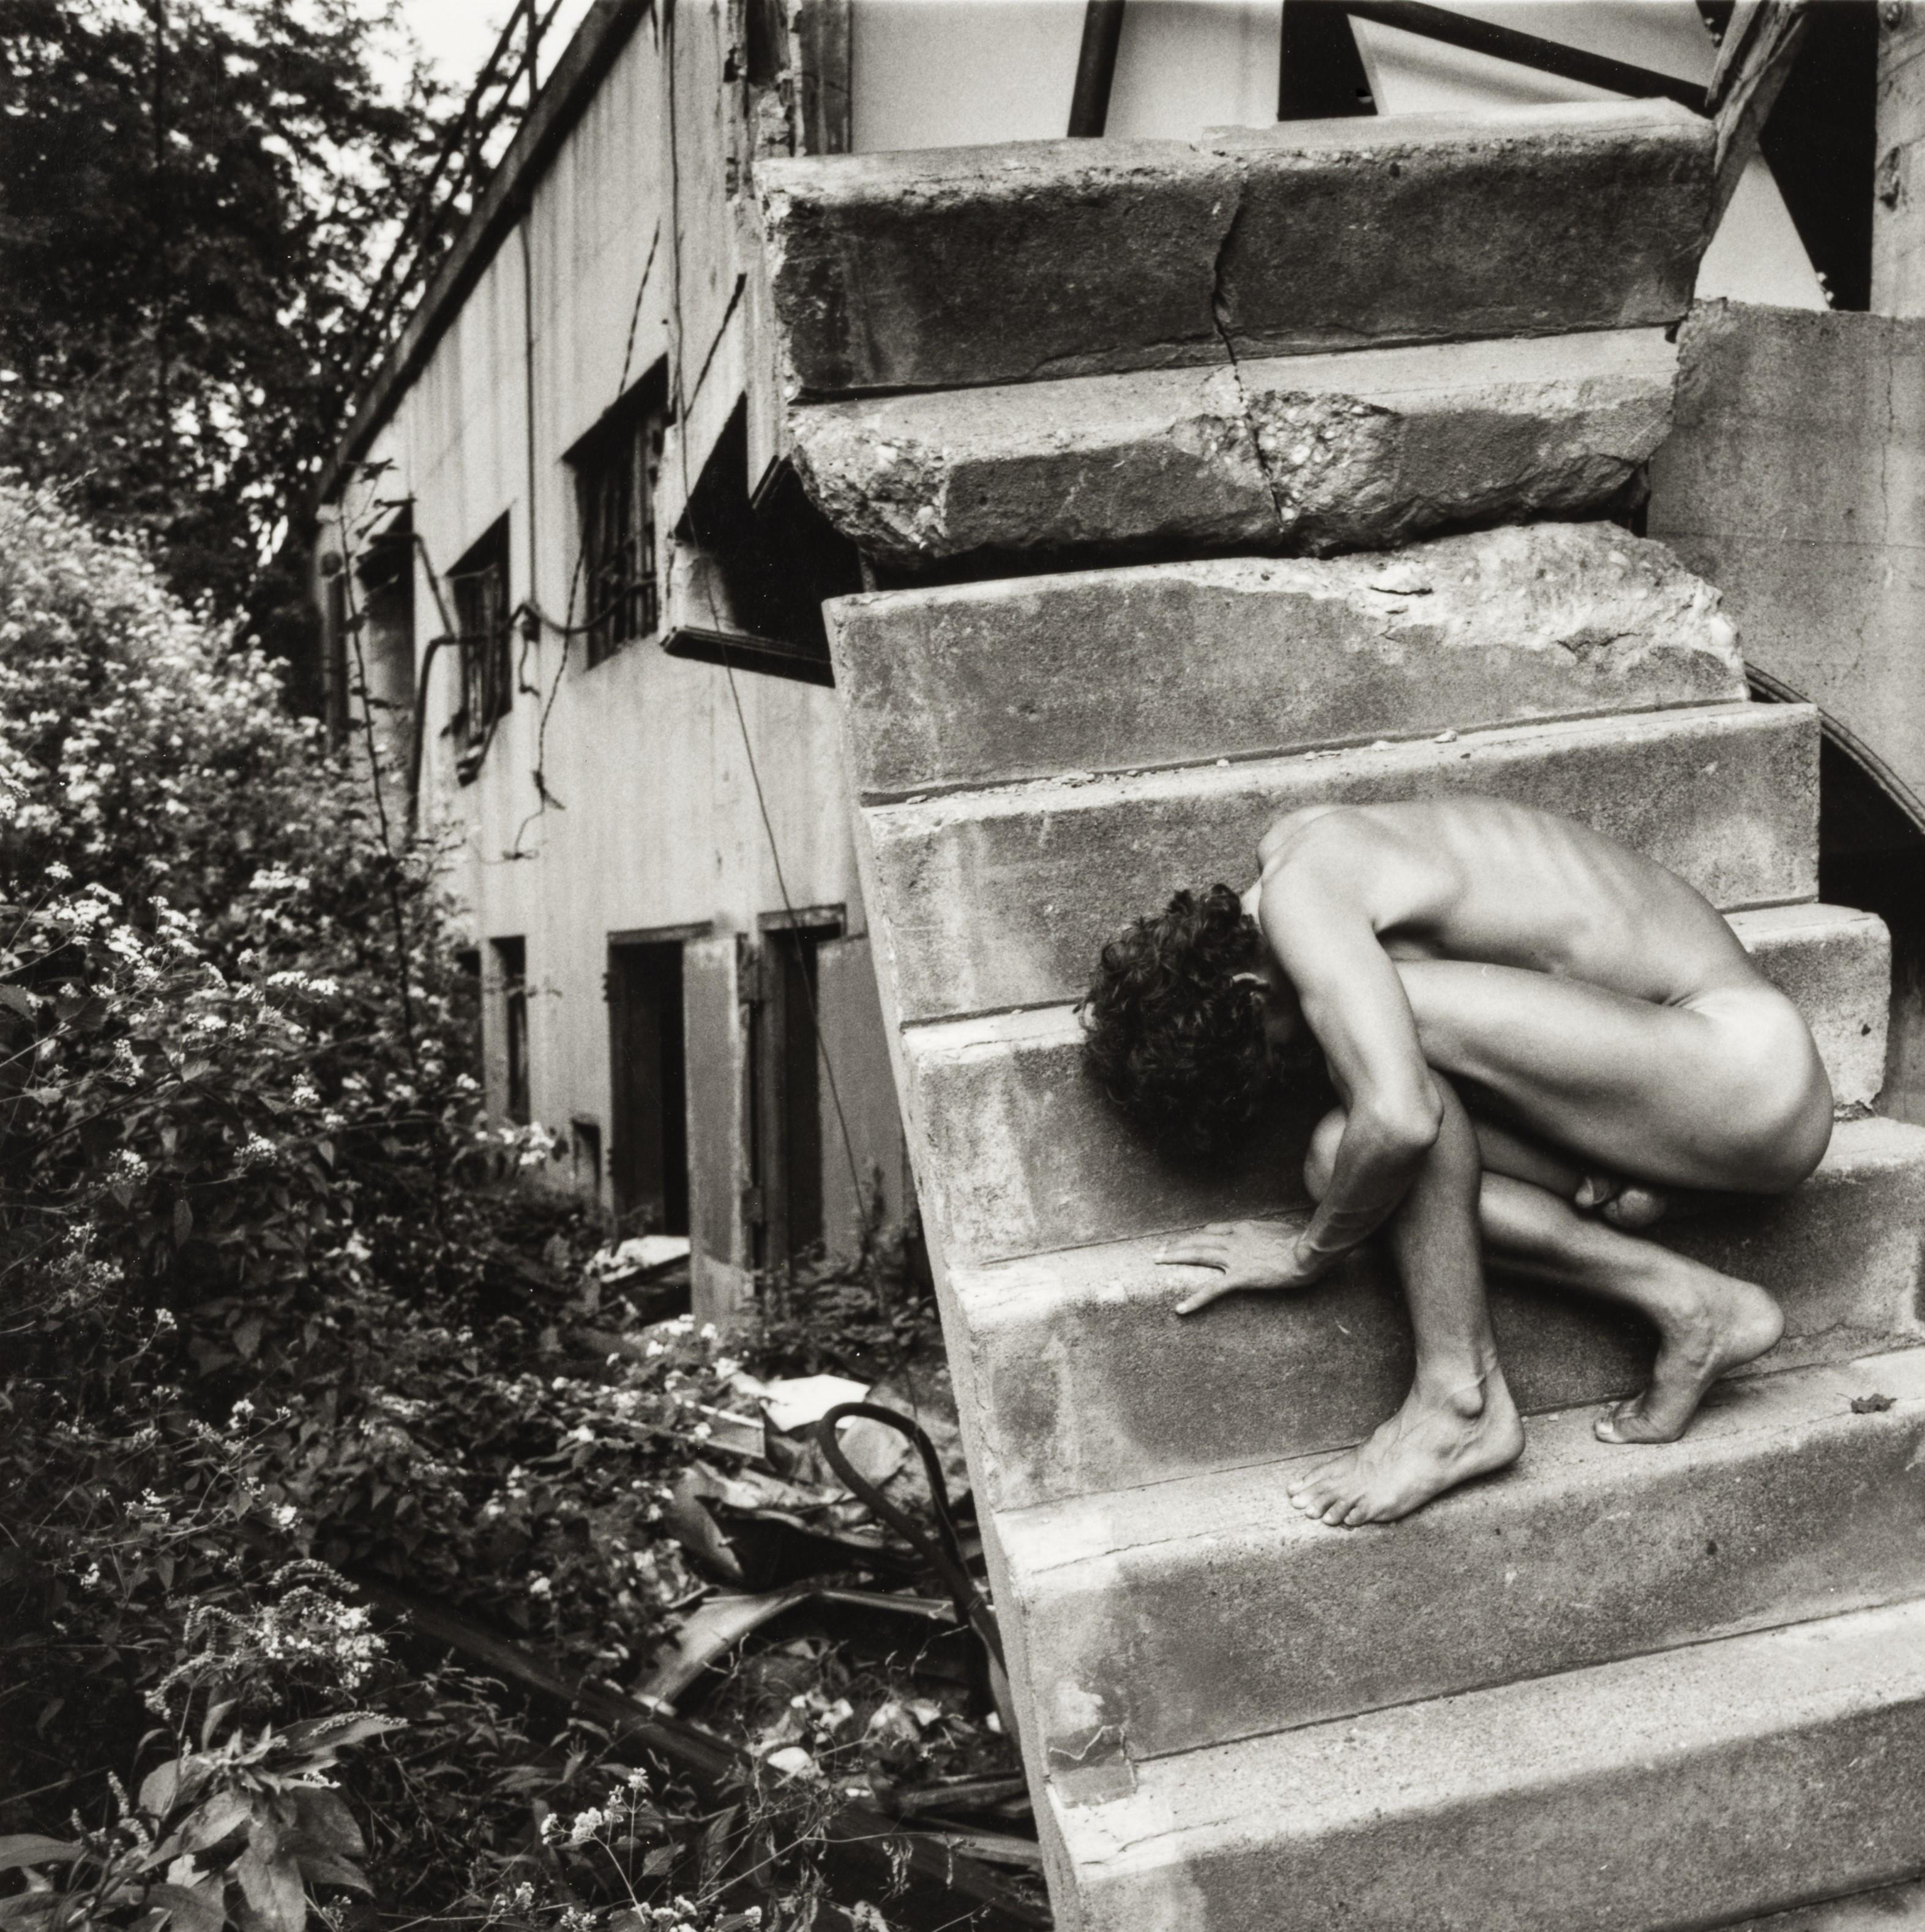 Nackt auf der Treppe (Grau), Figurative Photograph, von Arthur Tress